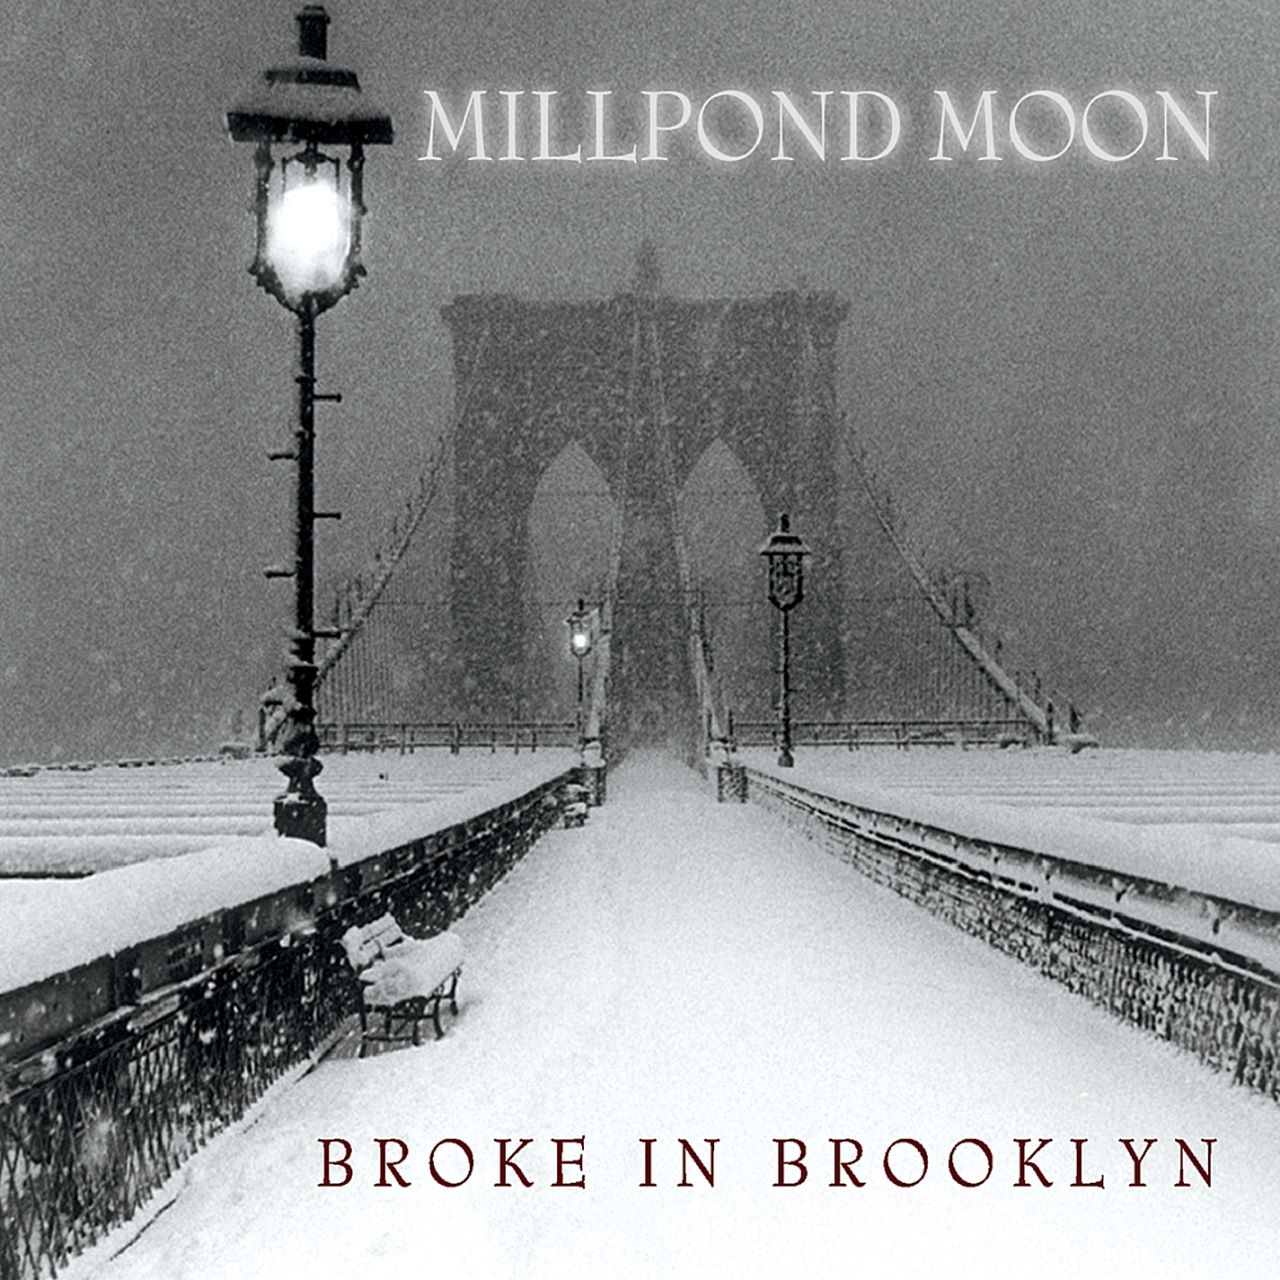 Millpond Moon - Broke In Brooklyn cover album